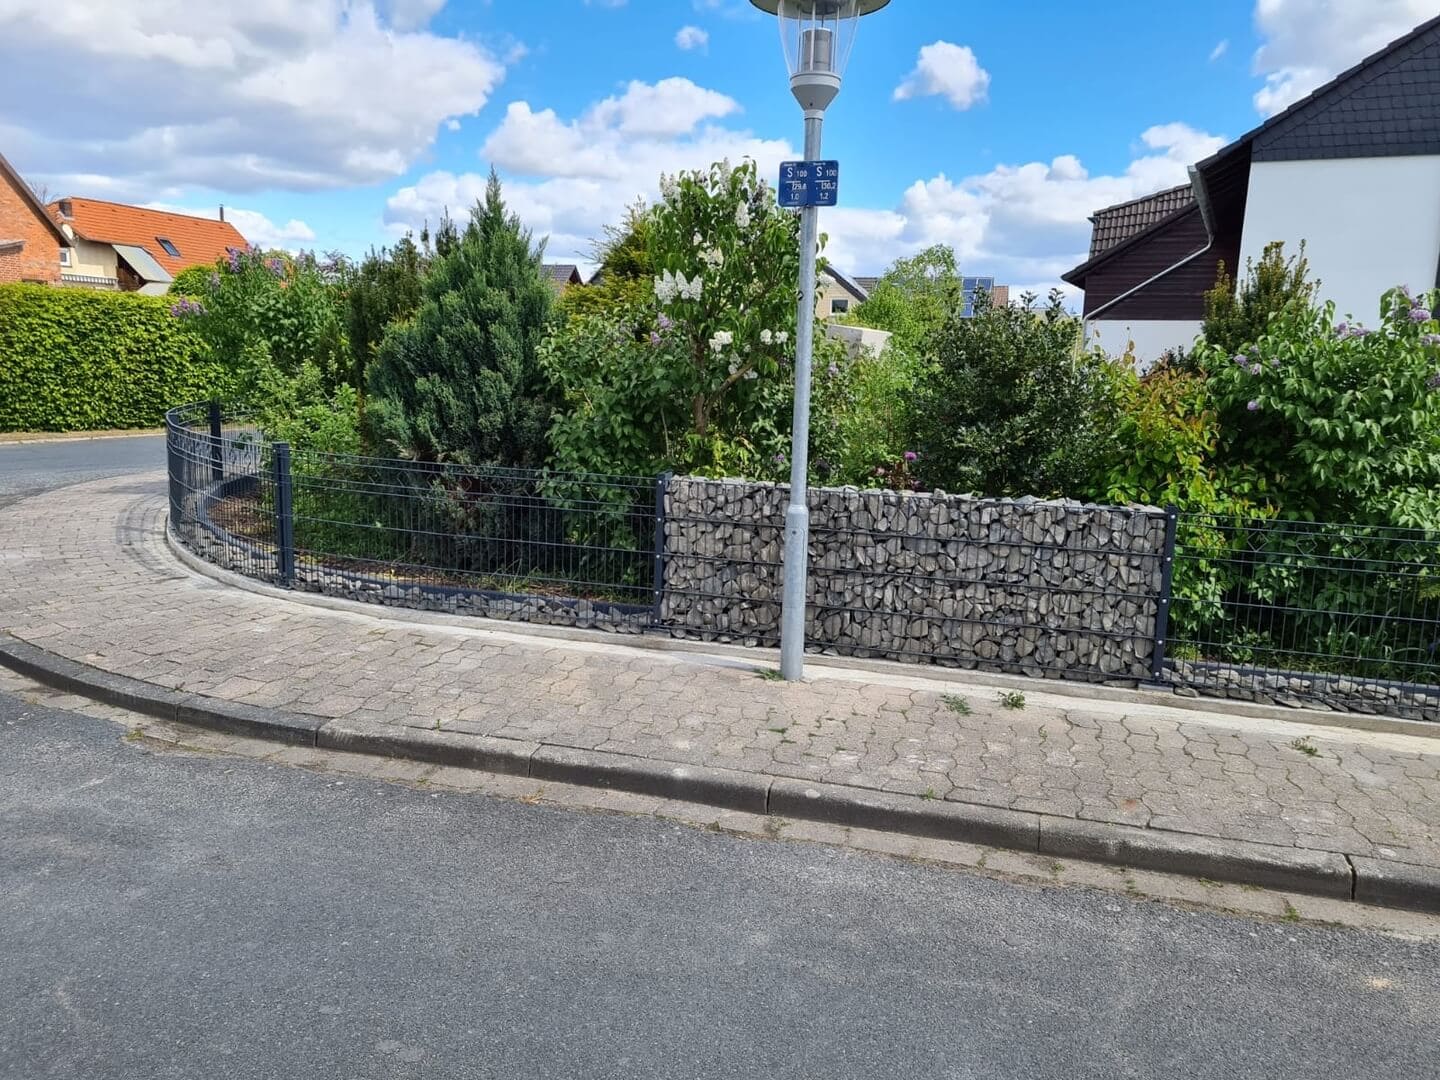 Der Blick von der Straße auf einen Zaun mit abwechselnden Stein- und Drahtelementen